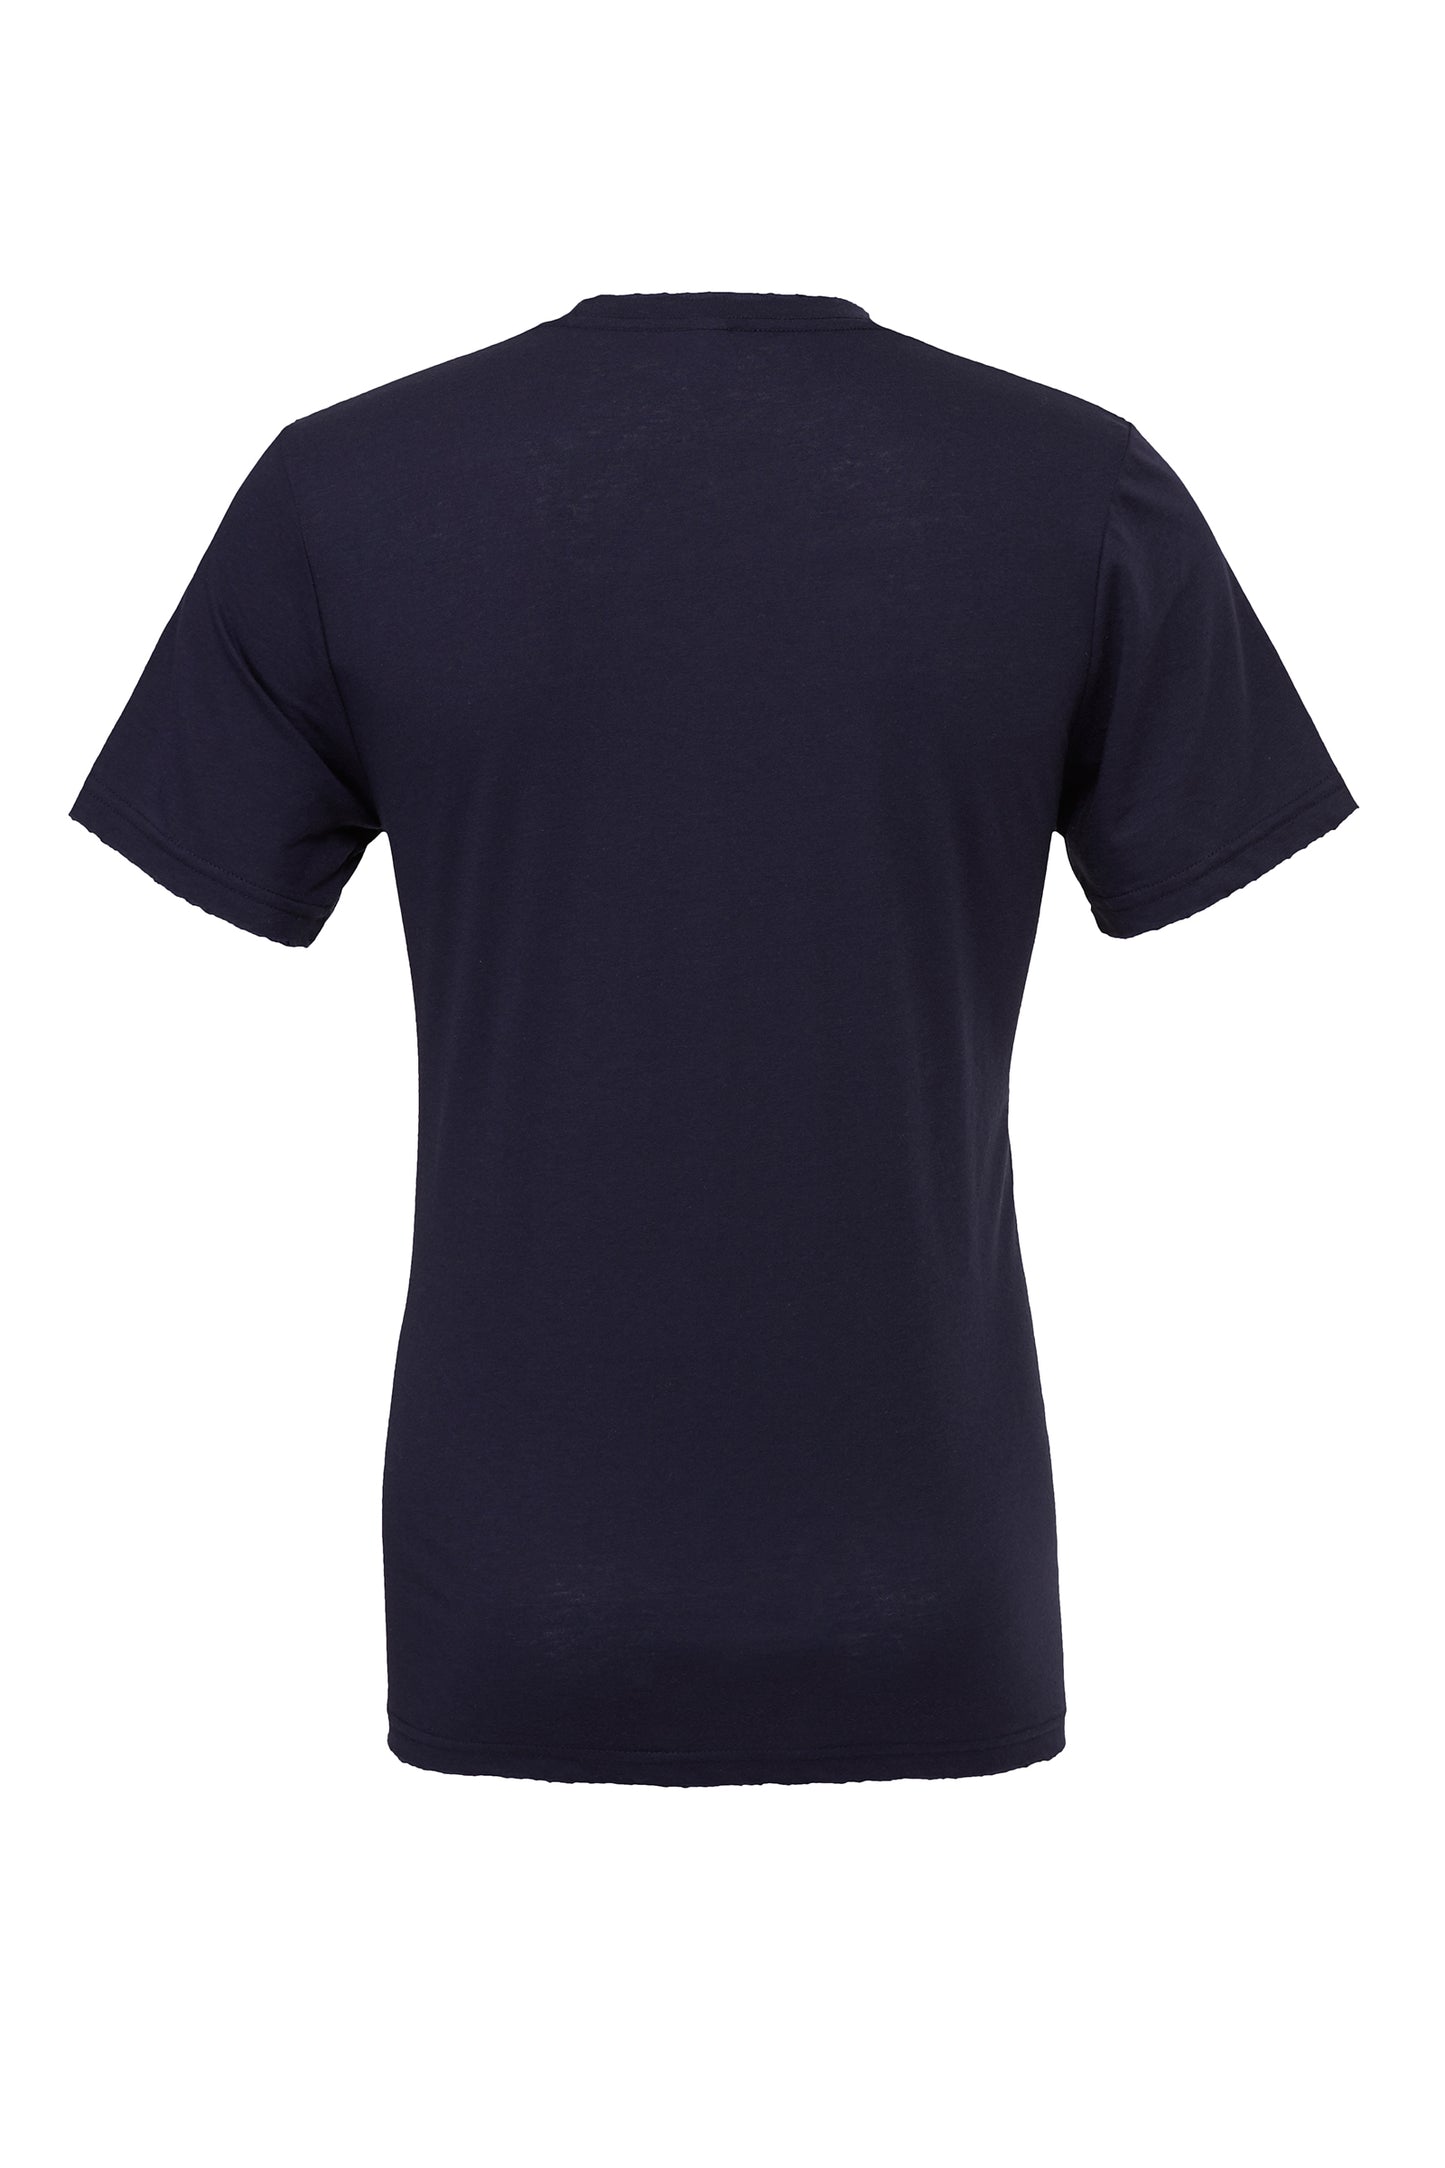 Men's Short Sleeve T-Shirt DTG Print